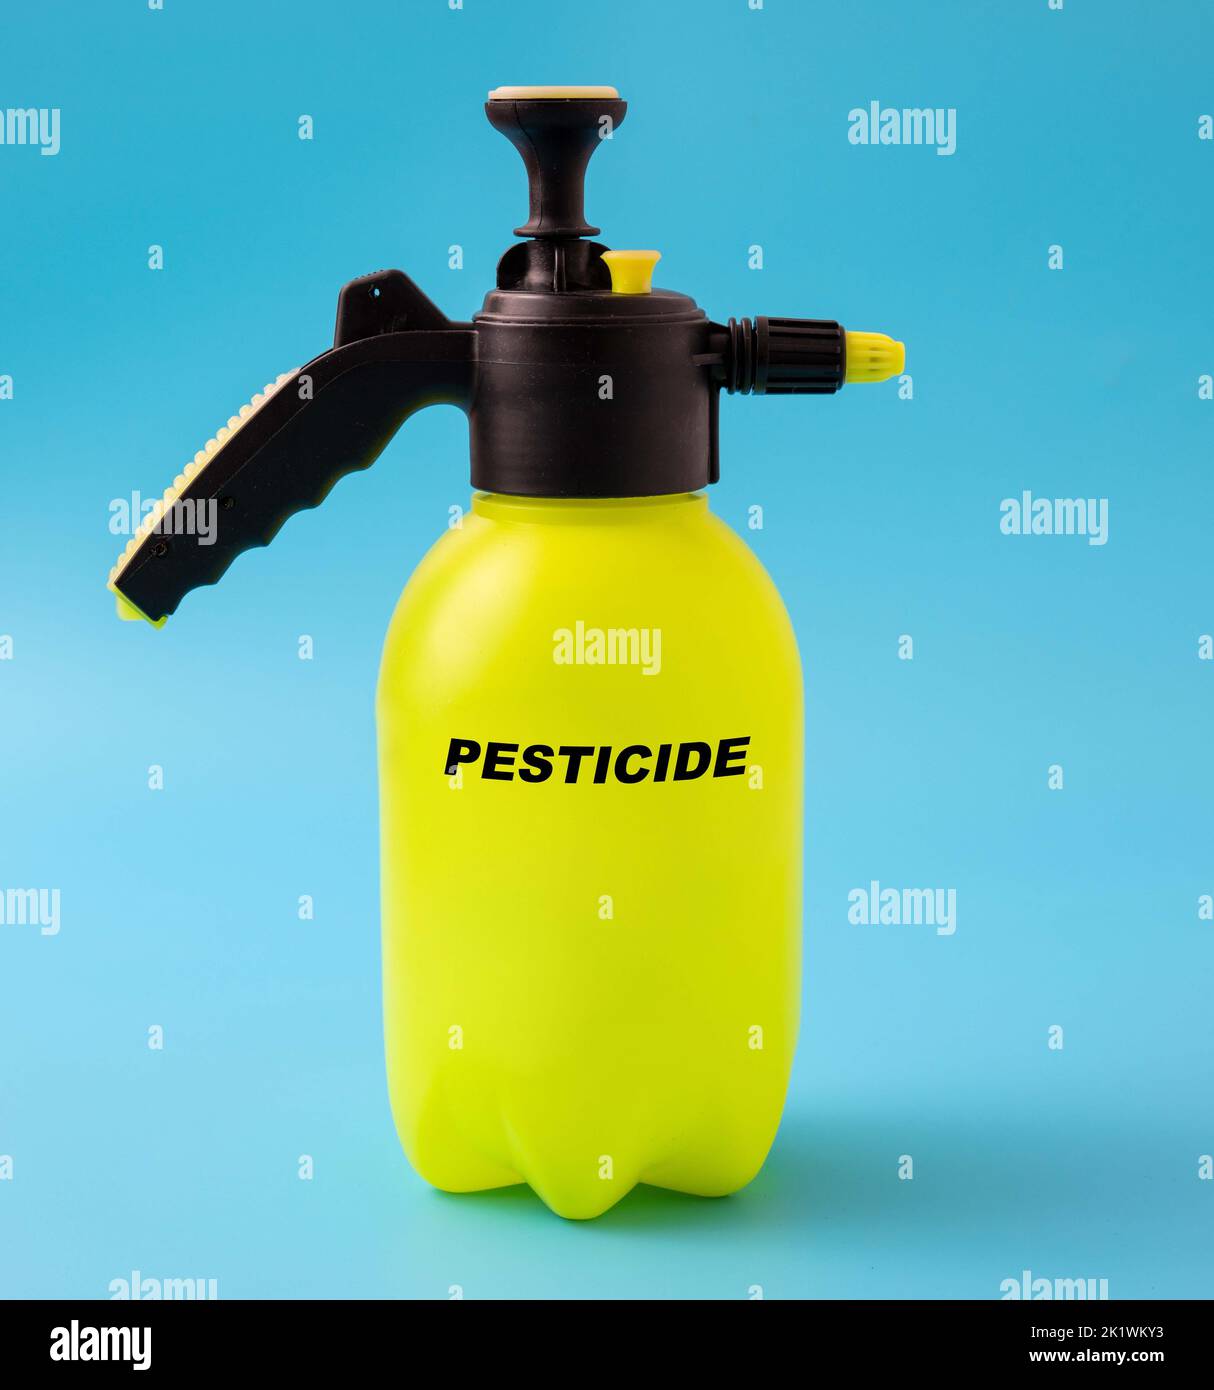 Pesticide in a plastic spray, conceptual image Stock Photo